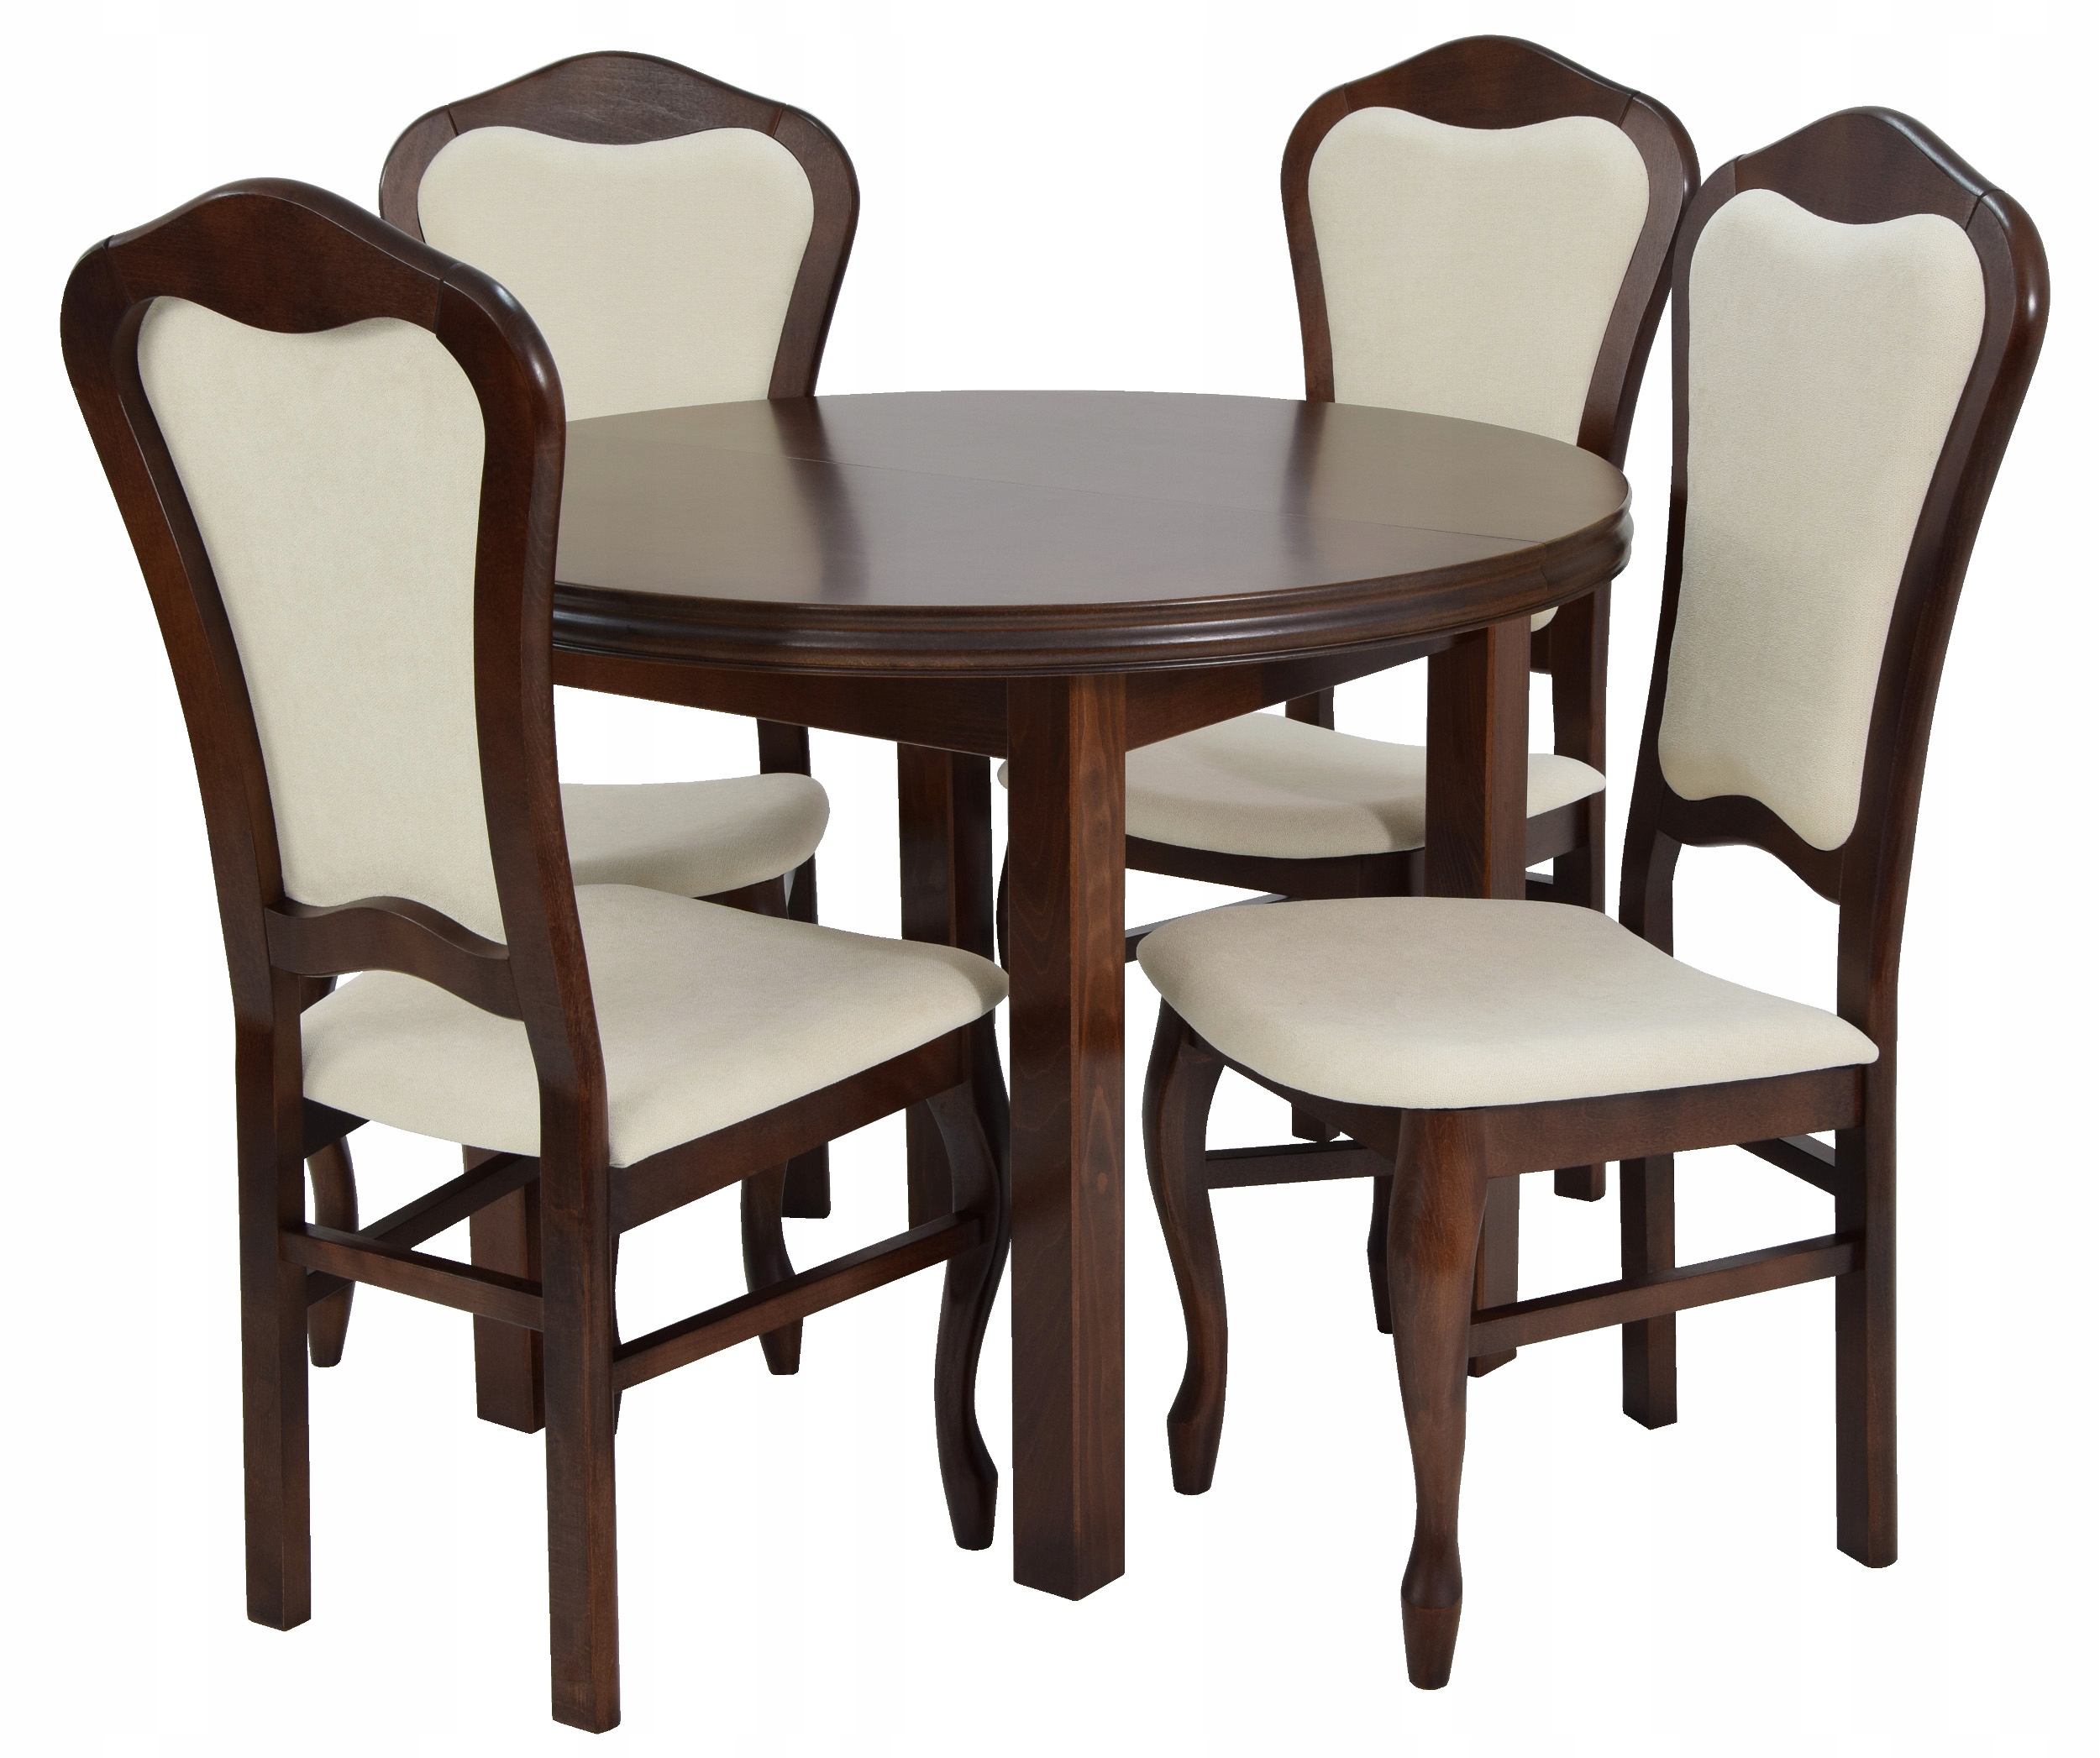 Стулья для кухни комплект 2 шт. Большой стол 12 стульев 100x200300. Комплект Langfang: стол + 4 стула. Столы и стулья для кухни. Кухонный стол и стулья.